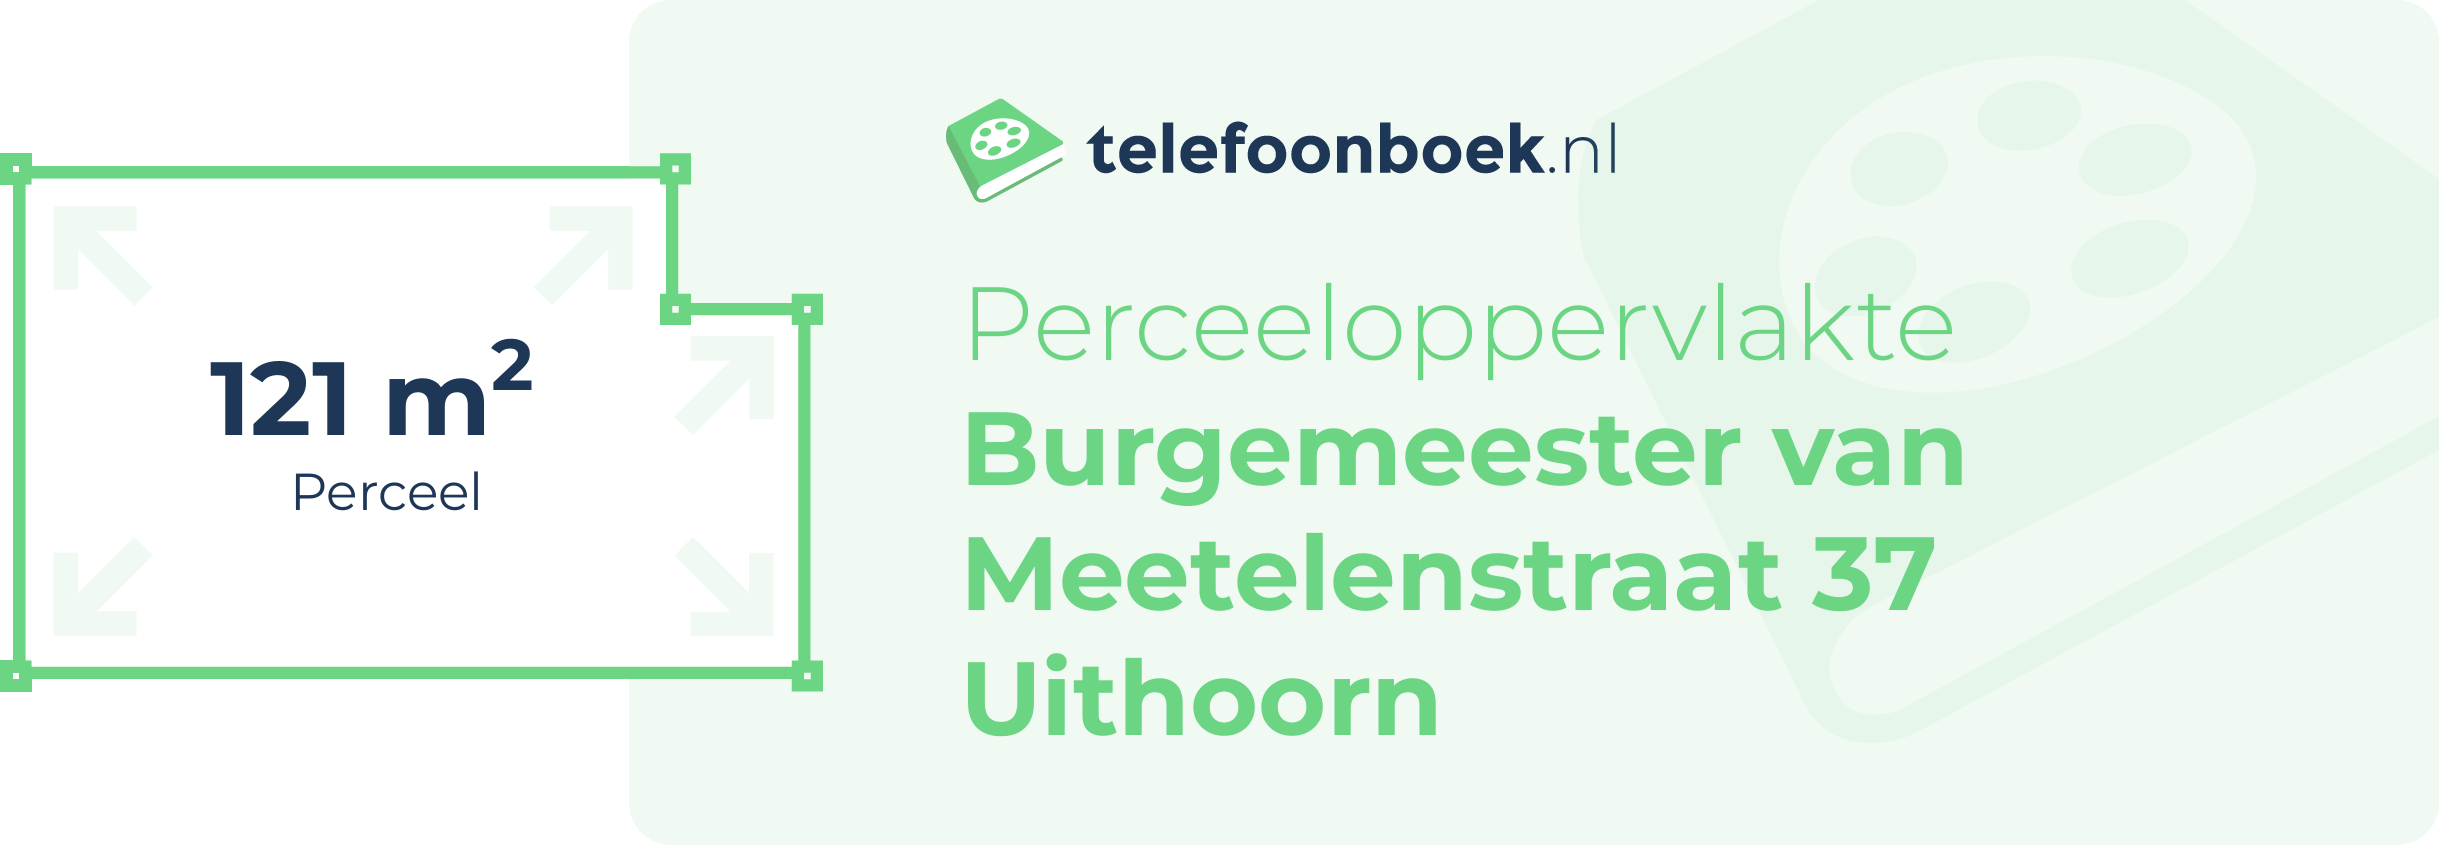 Perceeloppervlakte Burgemeester Van Meetelenstraat 37 Uithoorn